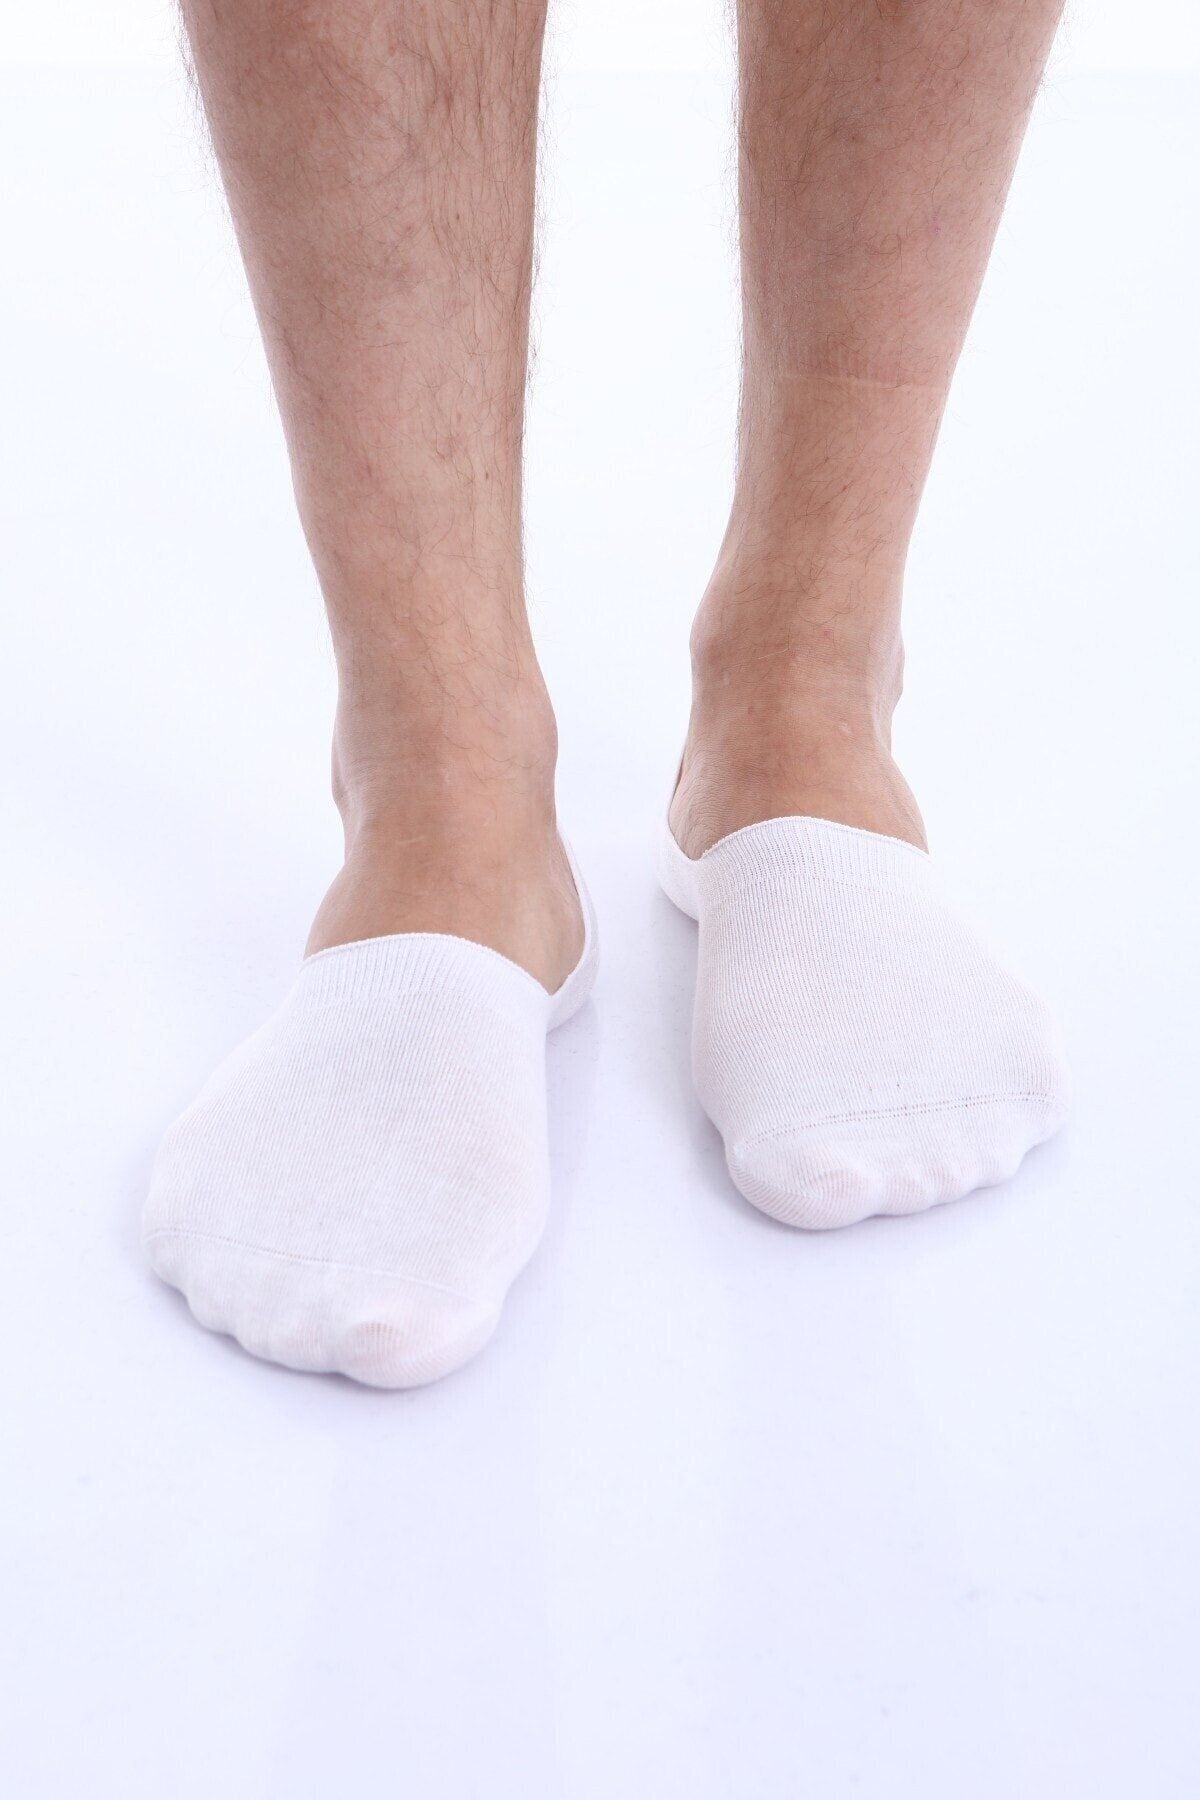 chulfa Coşkun Underwear 12 Pack Women's Ballerina Socks - Trendyol